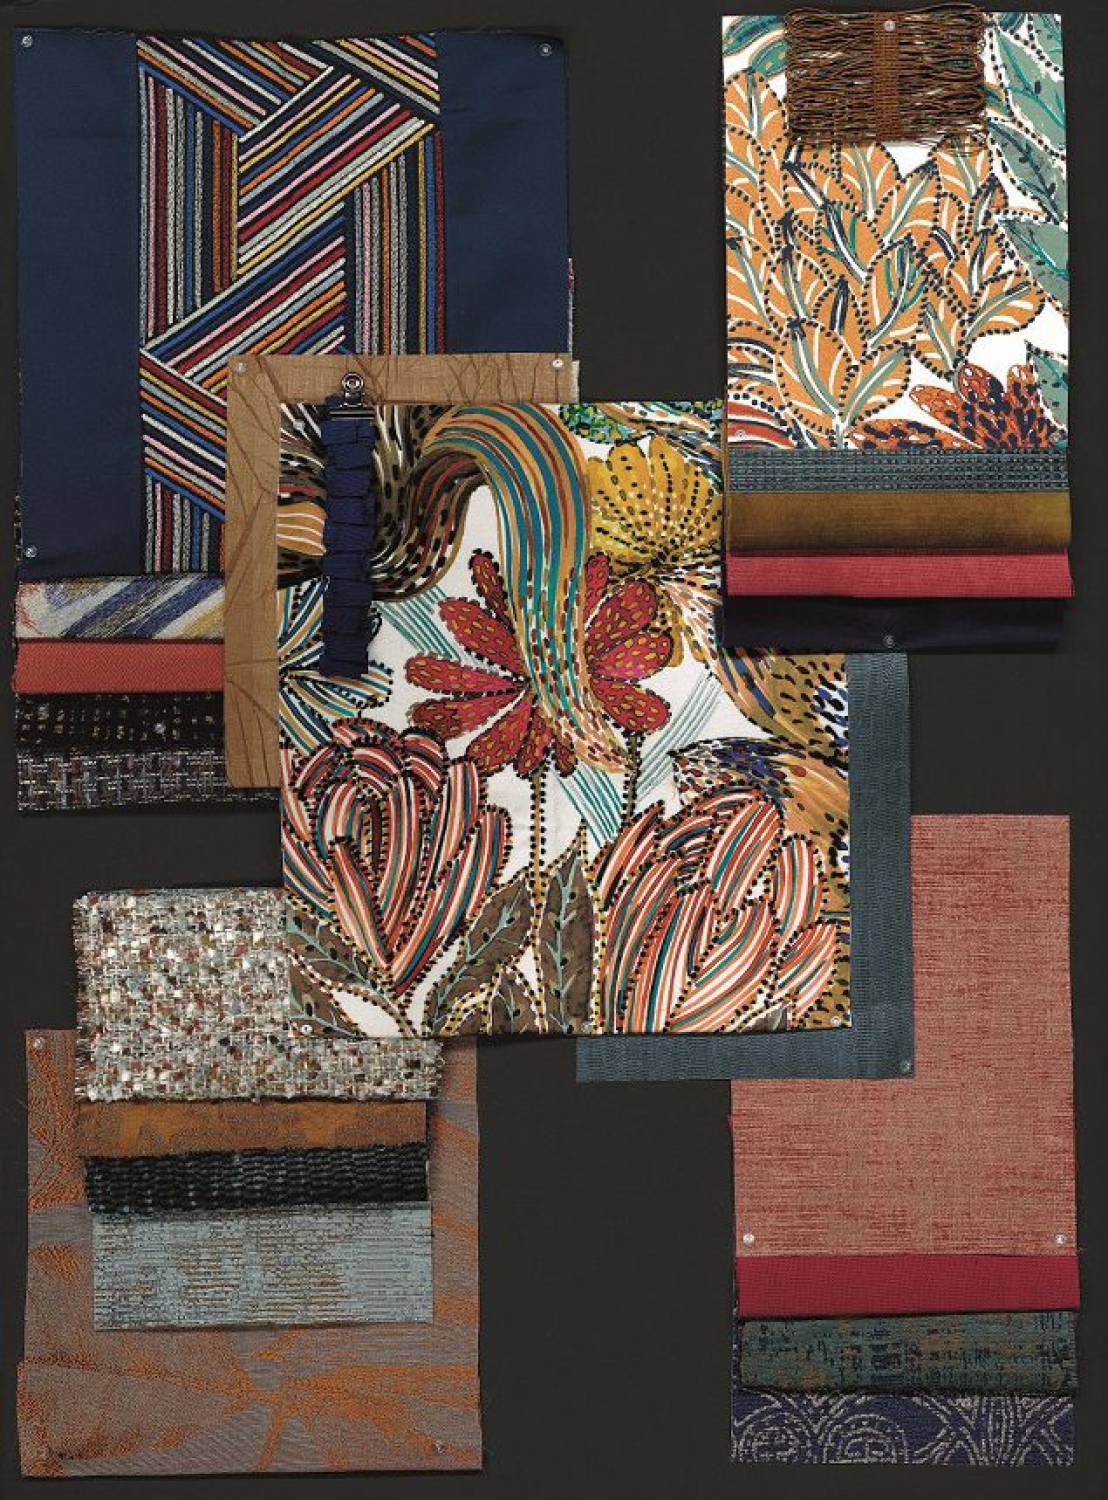 Tissus papiers peints Casamance printemps été 2019 : floral et multicolore, proposés par Nathalie Bossard Décoration, Décoratrice d'intérieur UFDI Rennes 35